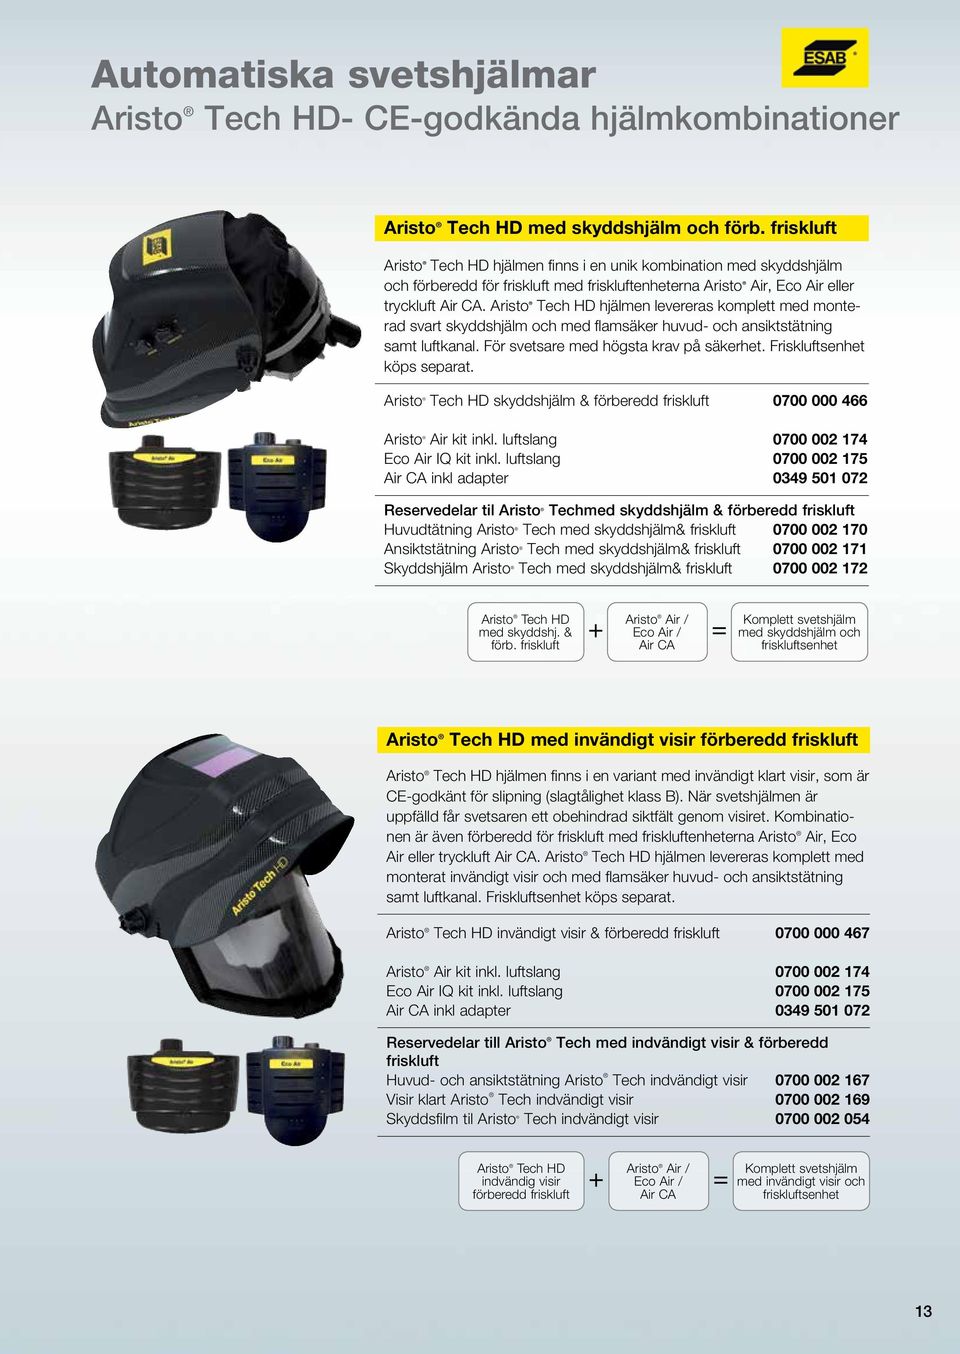 Aristo Tech HD hjälmen levereras komplett med monterad svart skyddshjälm och med flamsäker huvud- och ansiktstätning samt luftkanal. För svetsare med högsta krav på säkerhet.